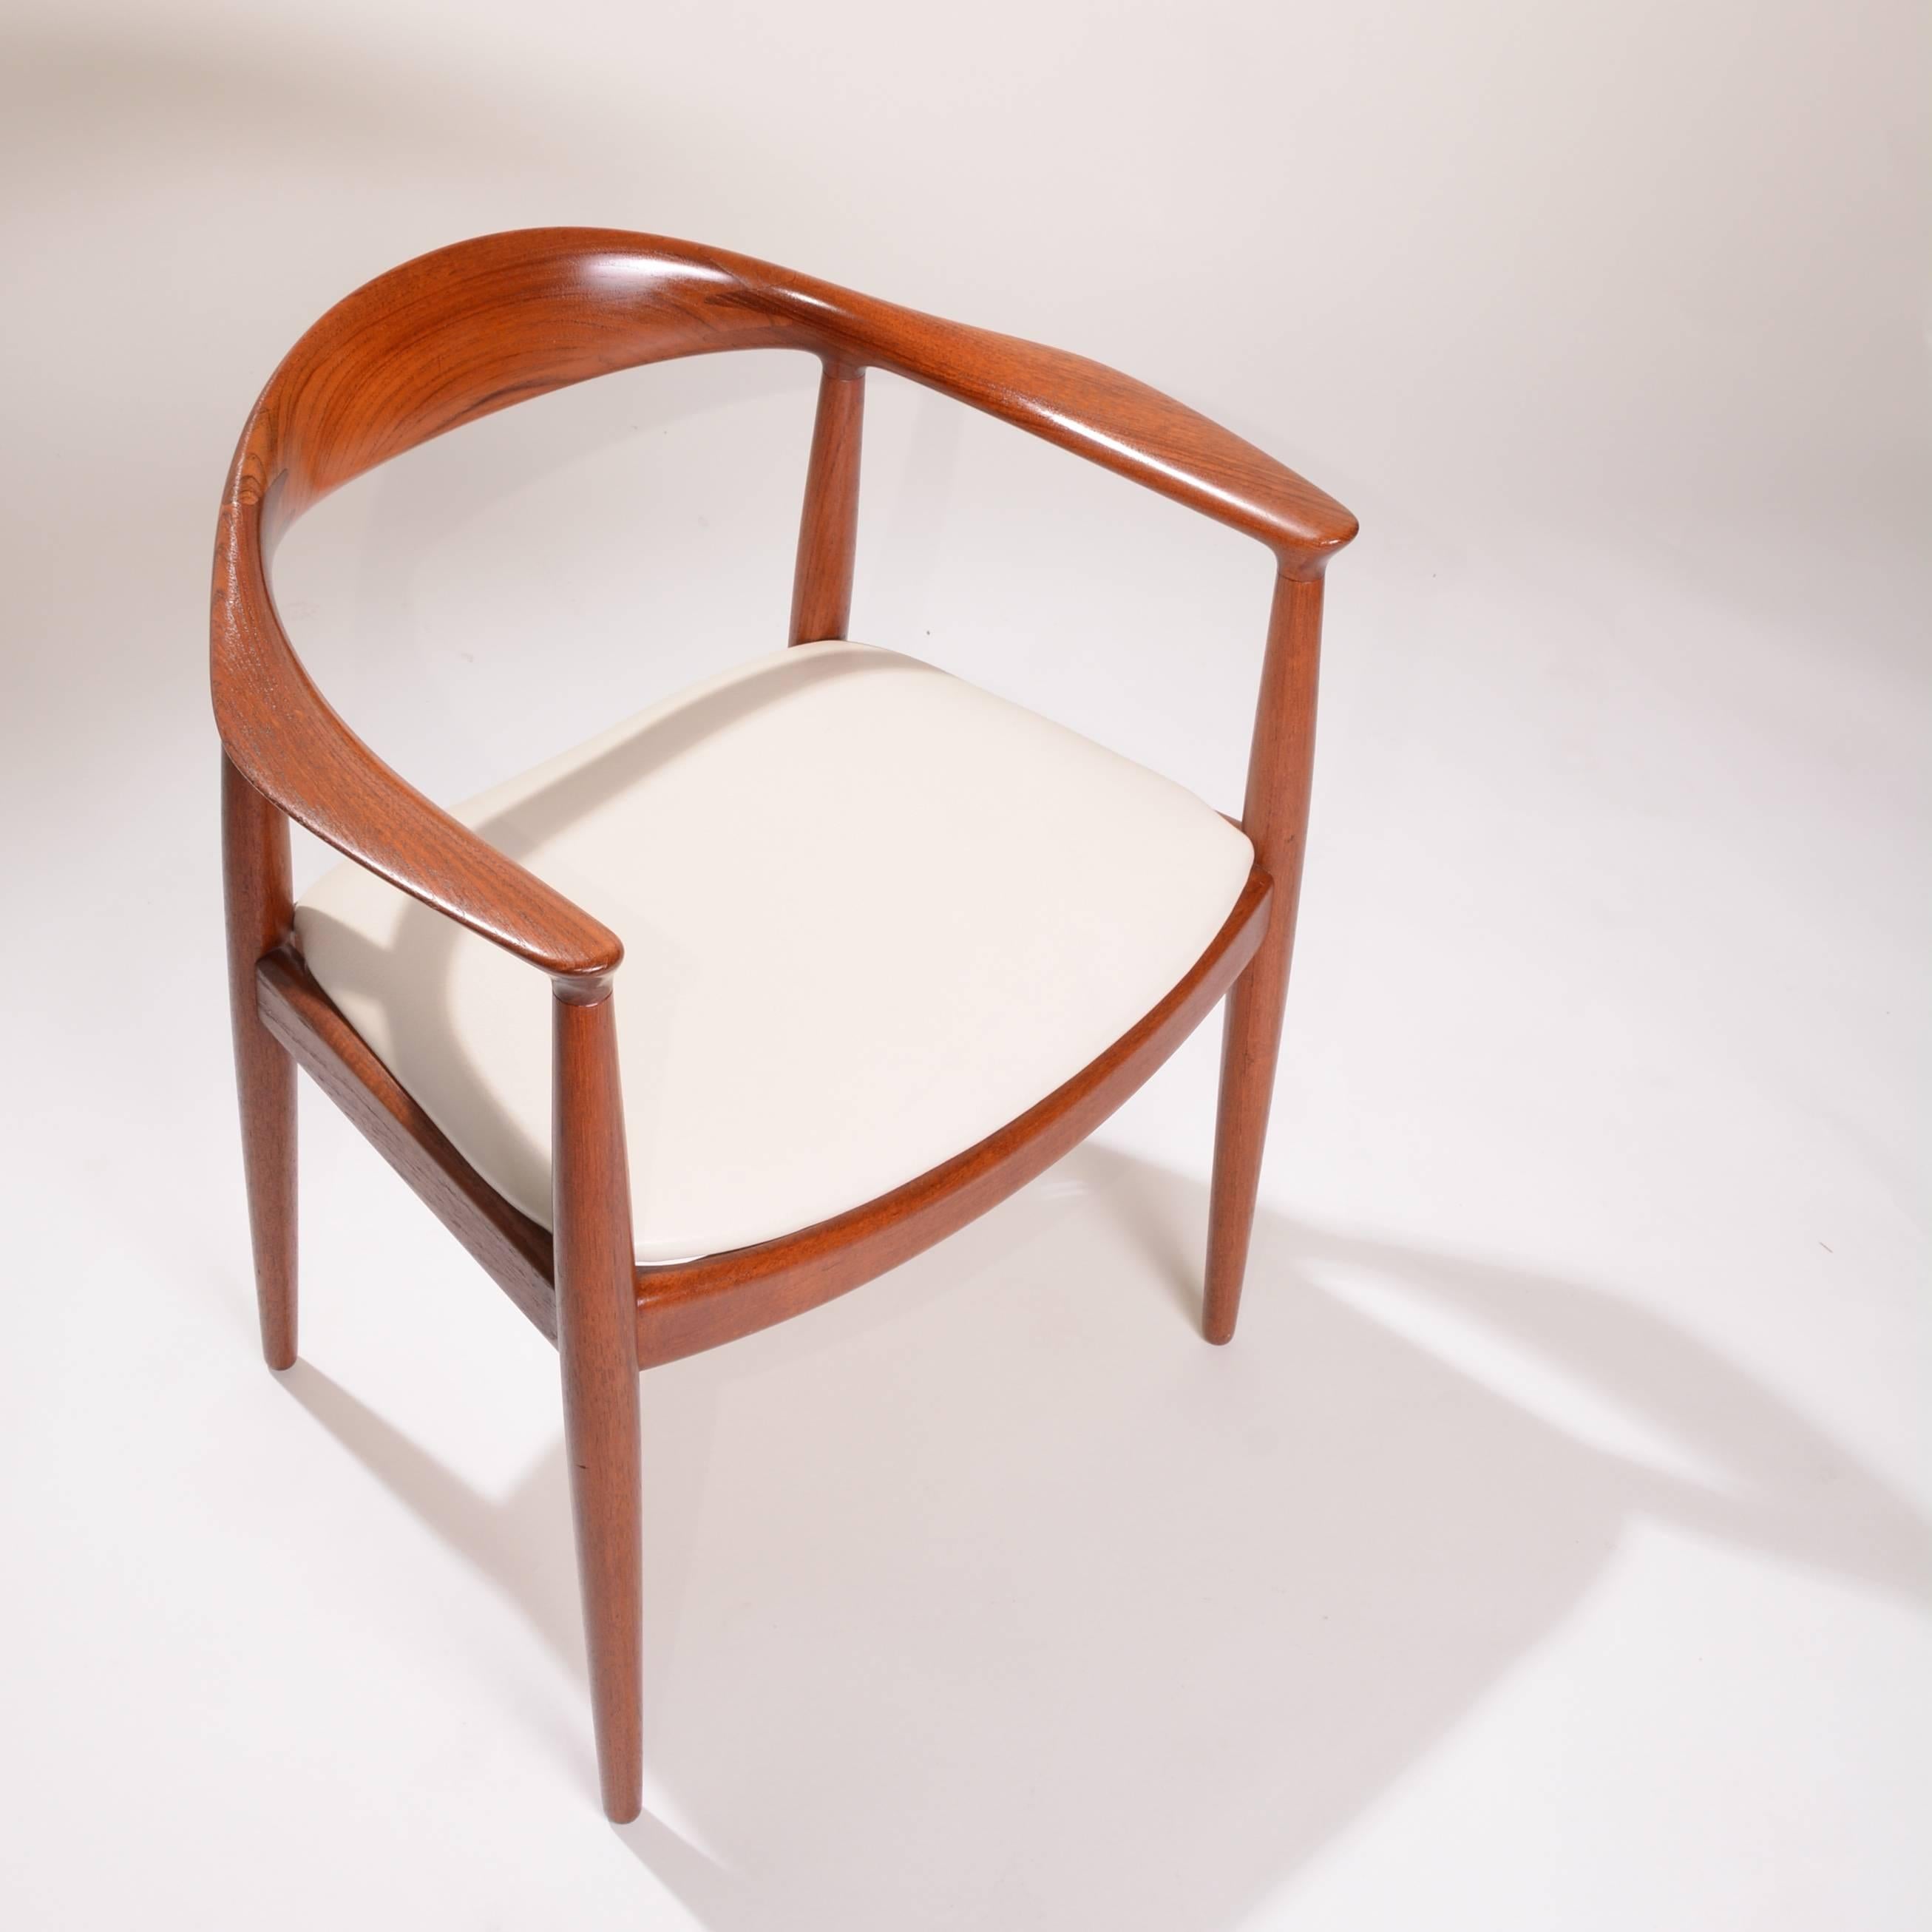 4 Early Hans Wegner for Johannes Hansen JH-503 Chairs in Teak For Sale 4